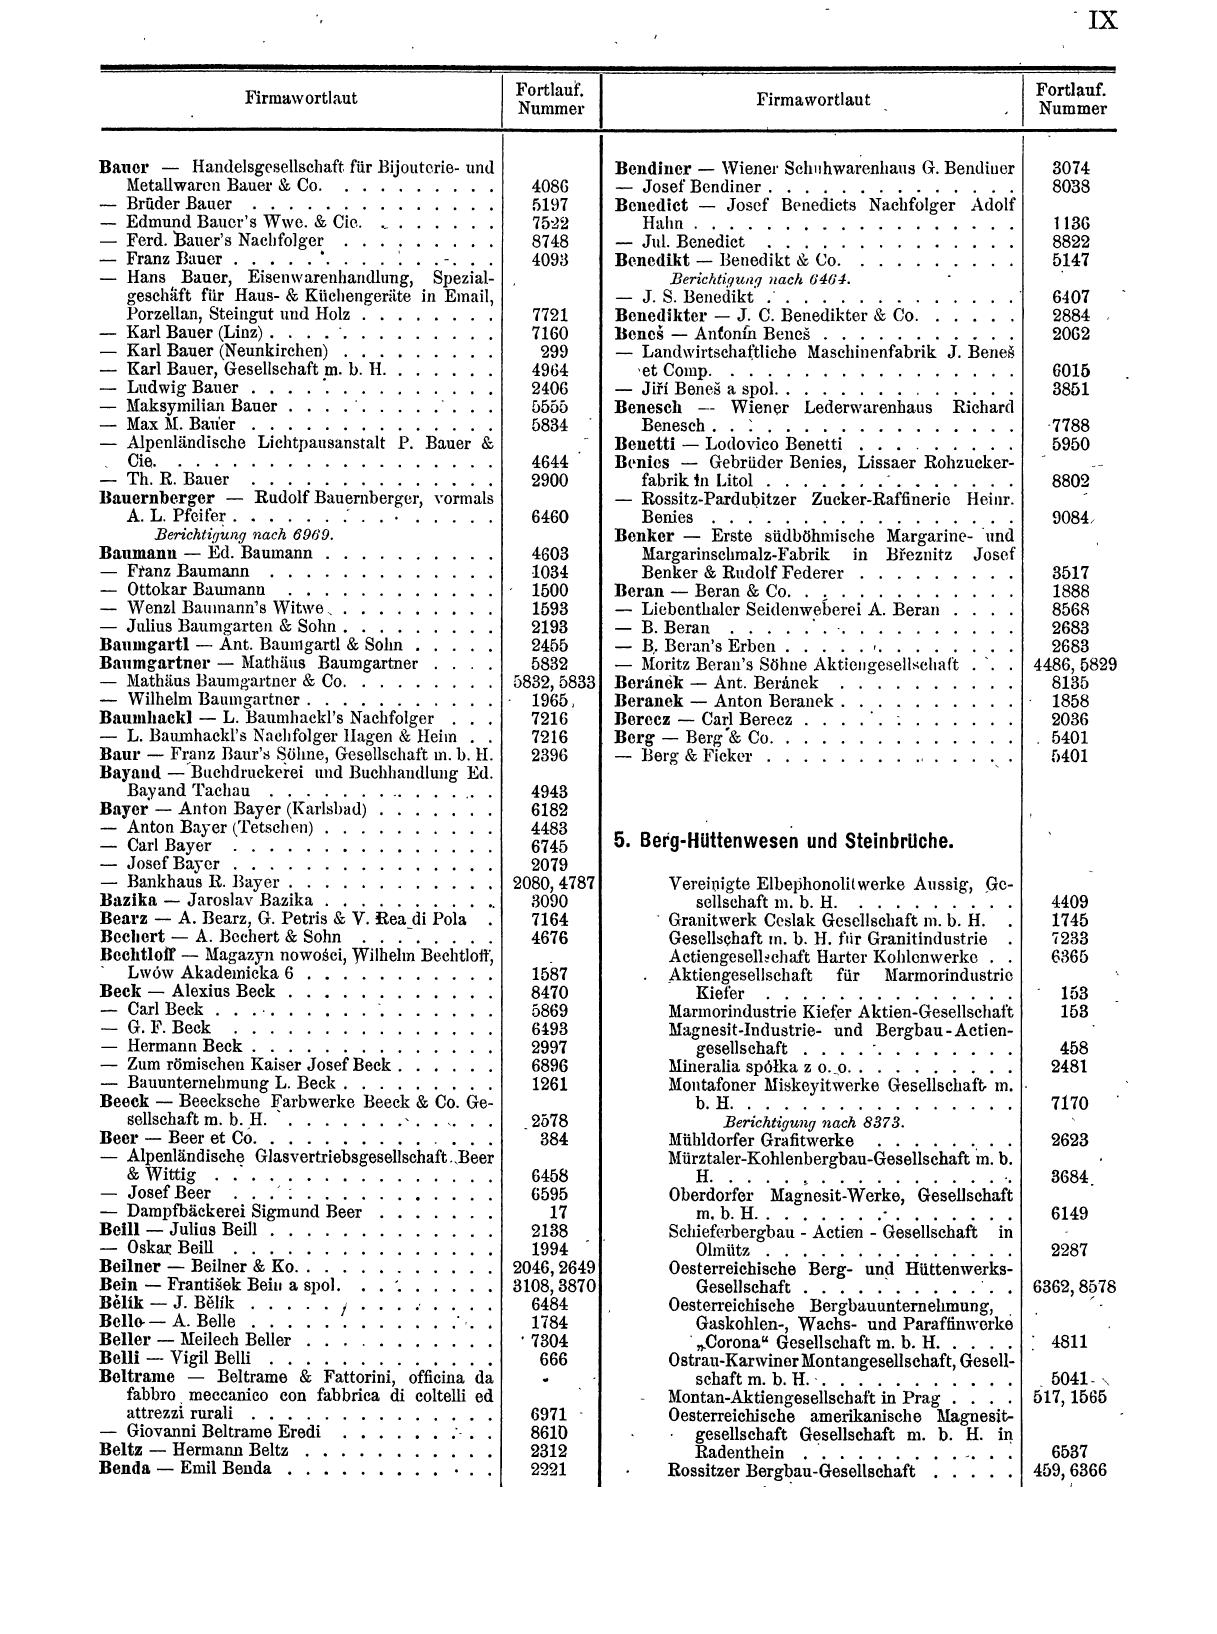 Zentralblatt für die Eintragungen in das Handelsregister 1913, Teil 1 - Seite 17